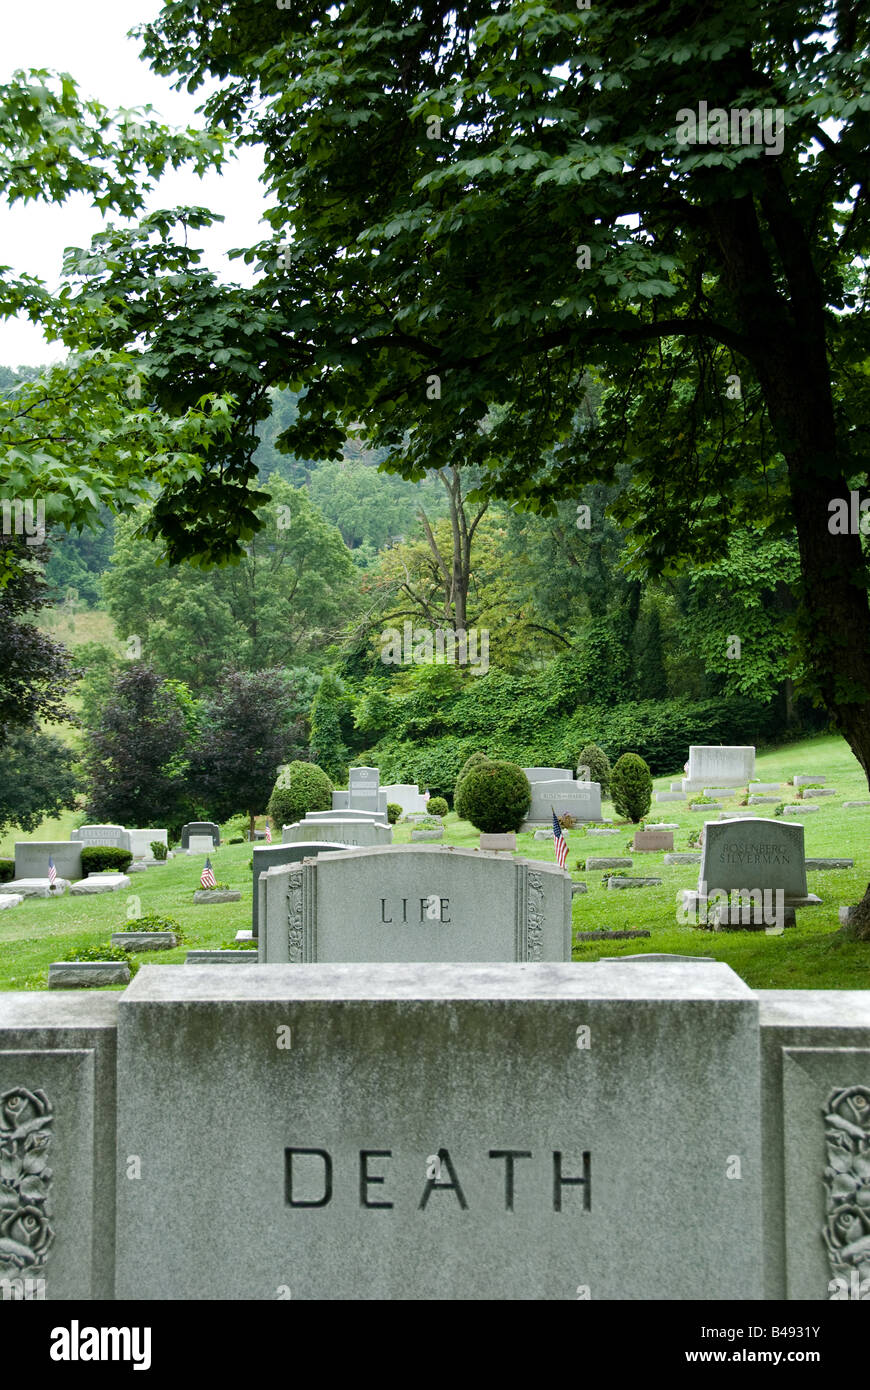 Gli oggetti contrassegnati per la rimozione definitiva in un cimitero illustrano una stimolante messaggio circa la vita e la morte. Vista Ovest cimitero, Pittsburgh, Pennsylvania Foto Stock